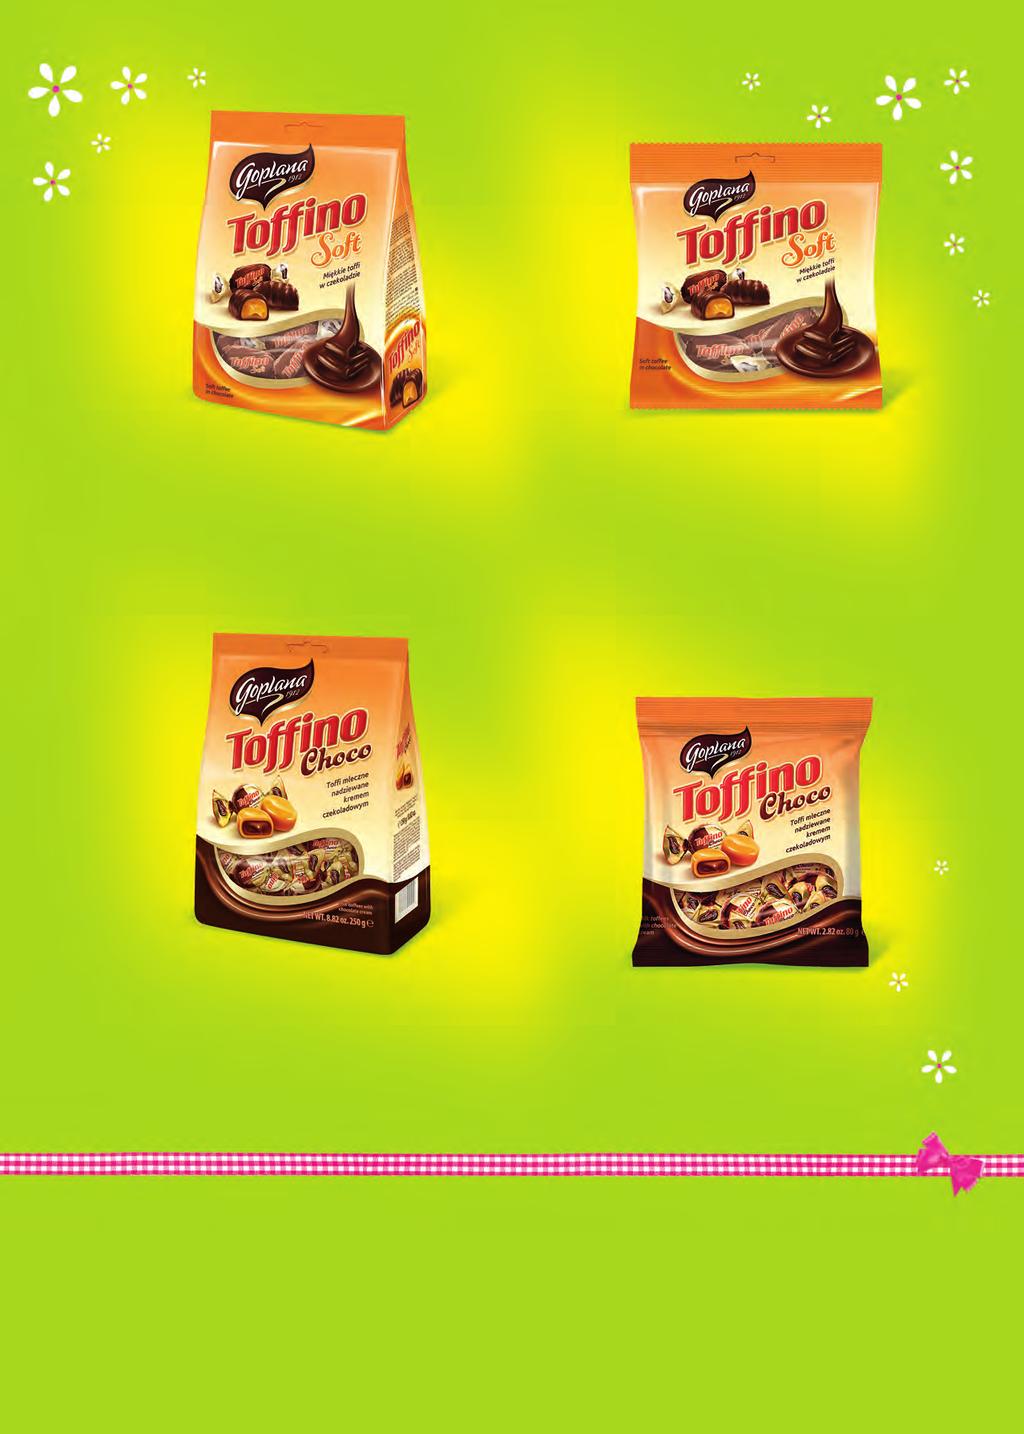 23. Toffino Soft 20 g 24. Toffino Soft 0 g 25. Toffino Choco 250 g 2. Toffino Choco 0 g na ie 23. Toffino Soft m-cy 5 20 g 500352013251 3, kg 50035211544 24.